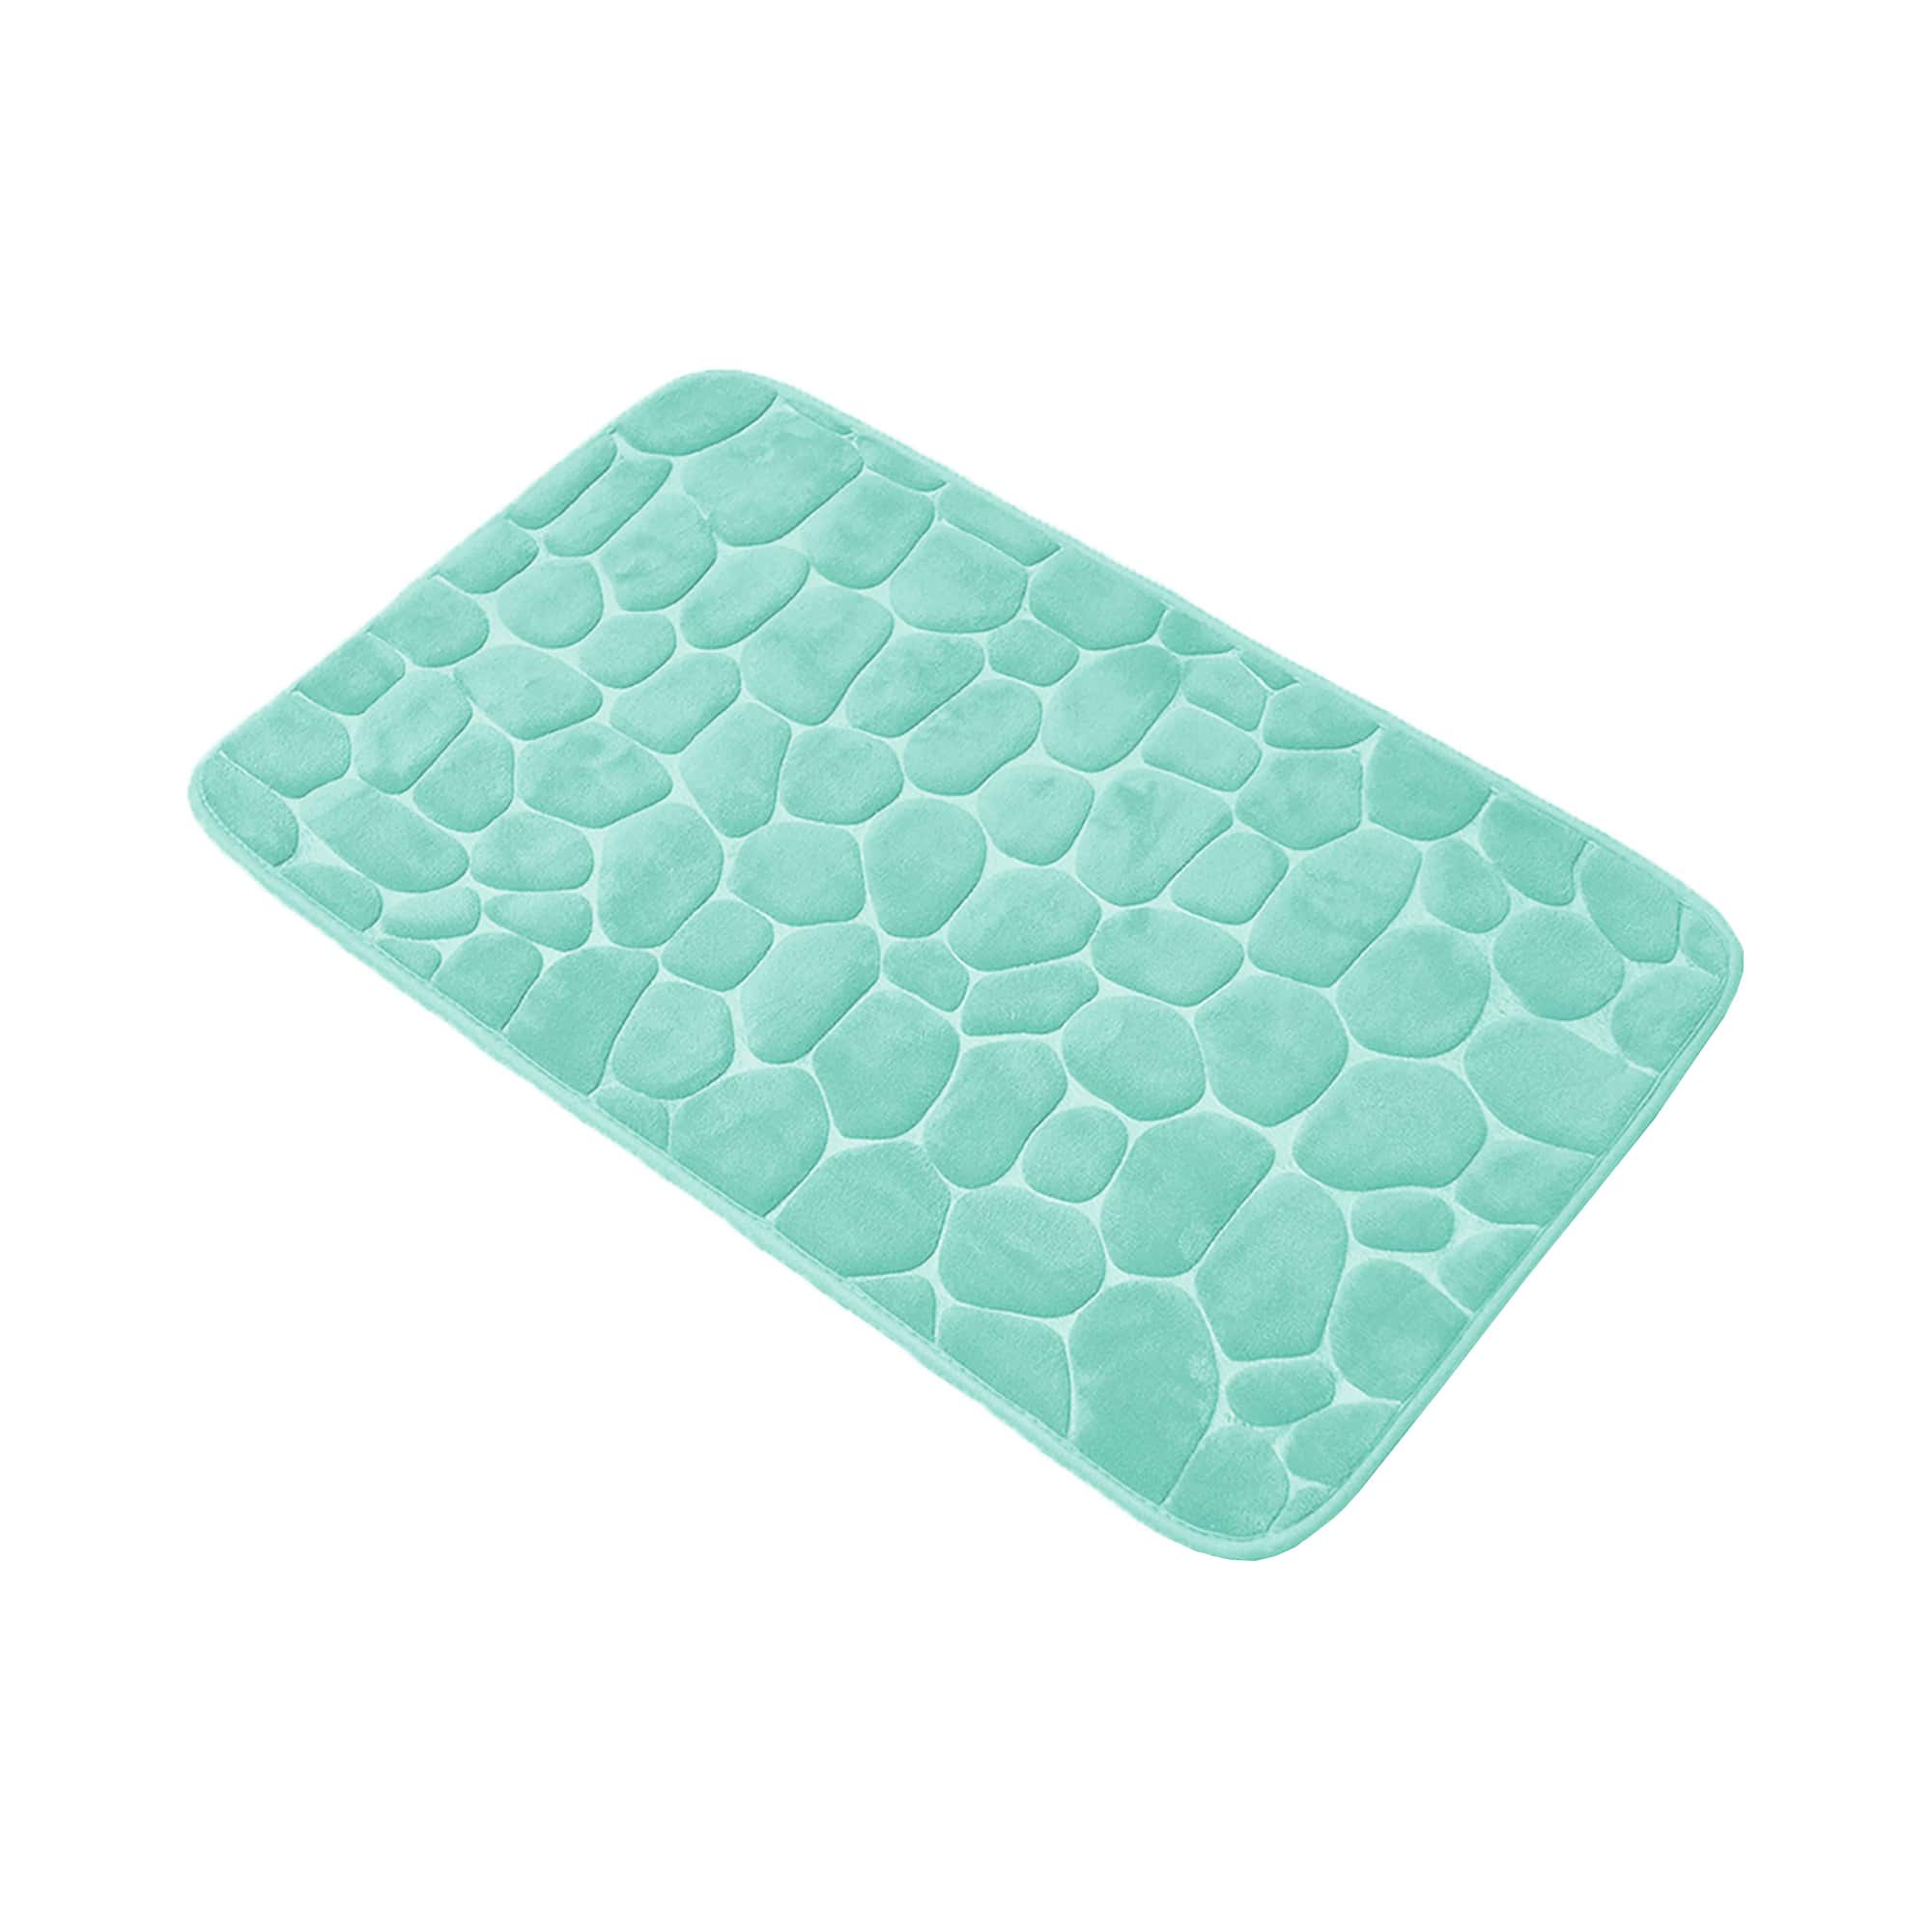 Evideco Bath Rug Memory Foam Mat 3D Pebble Aqua Blue 32L x 20W